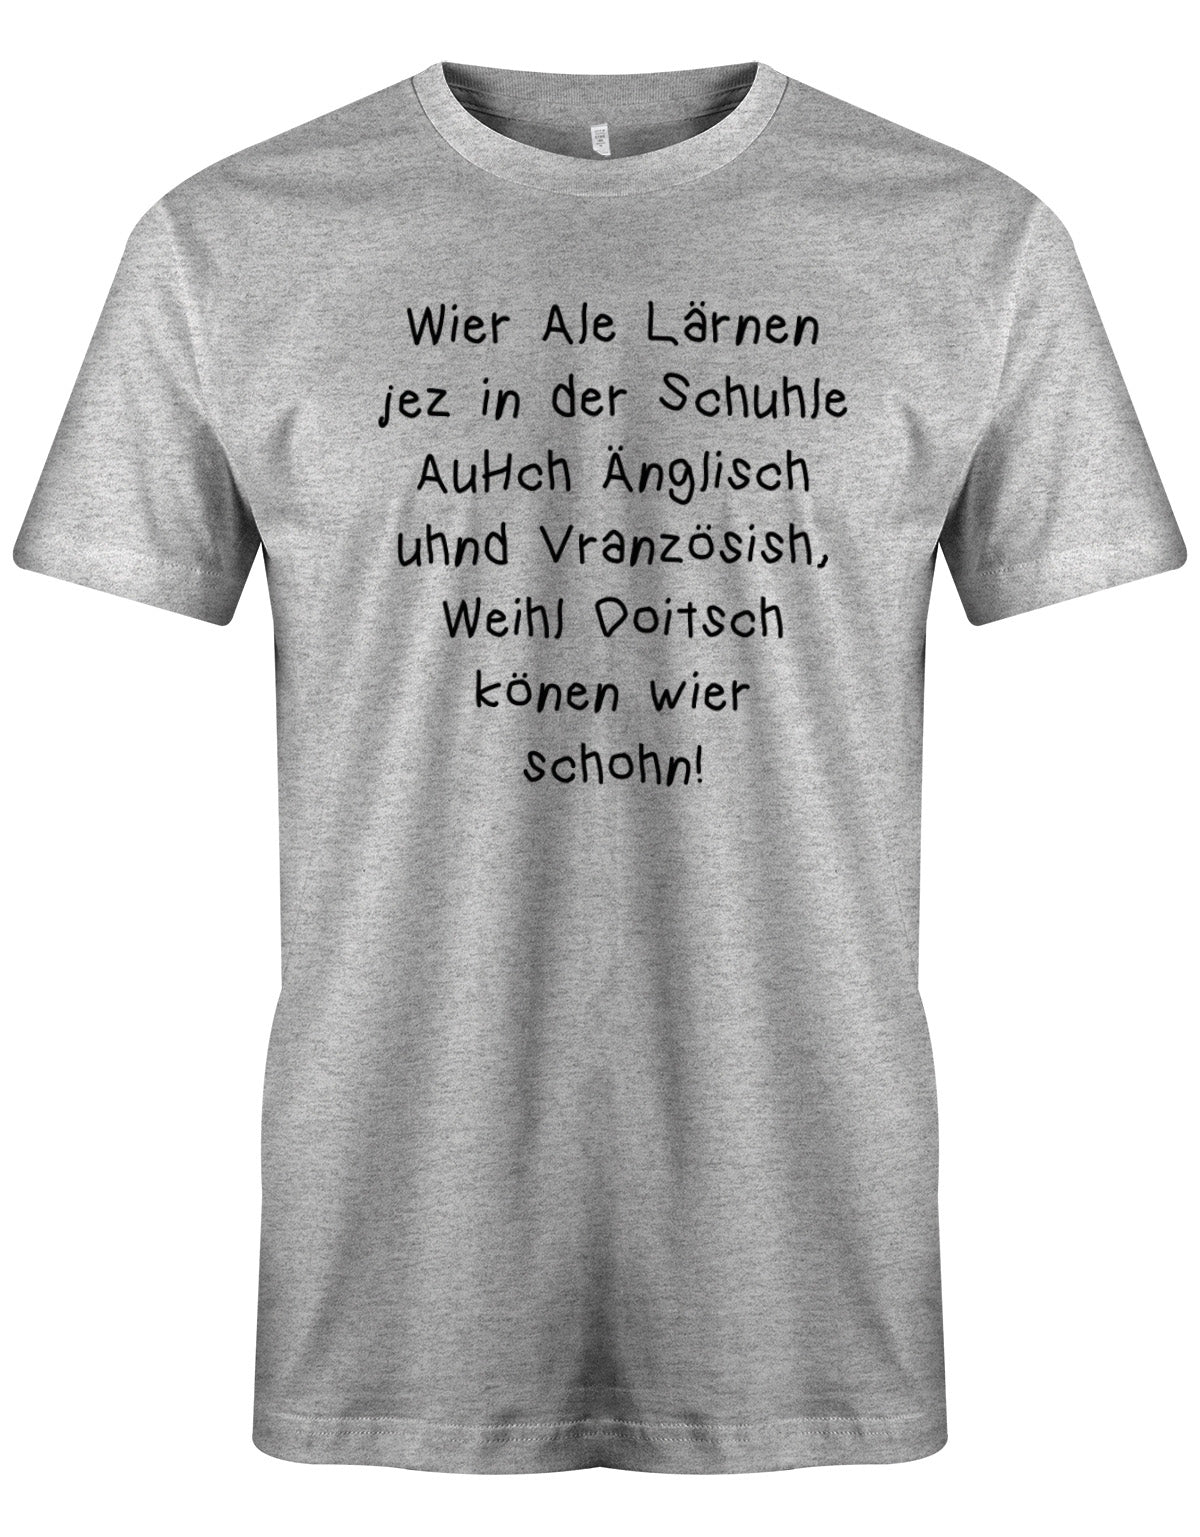 Wir alle lernen jetzt in der Schule Englisch weil Deutsch können wir schon - Lustige Sprüche - Herren T-Shirt